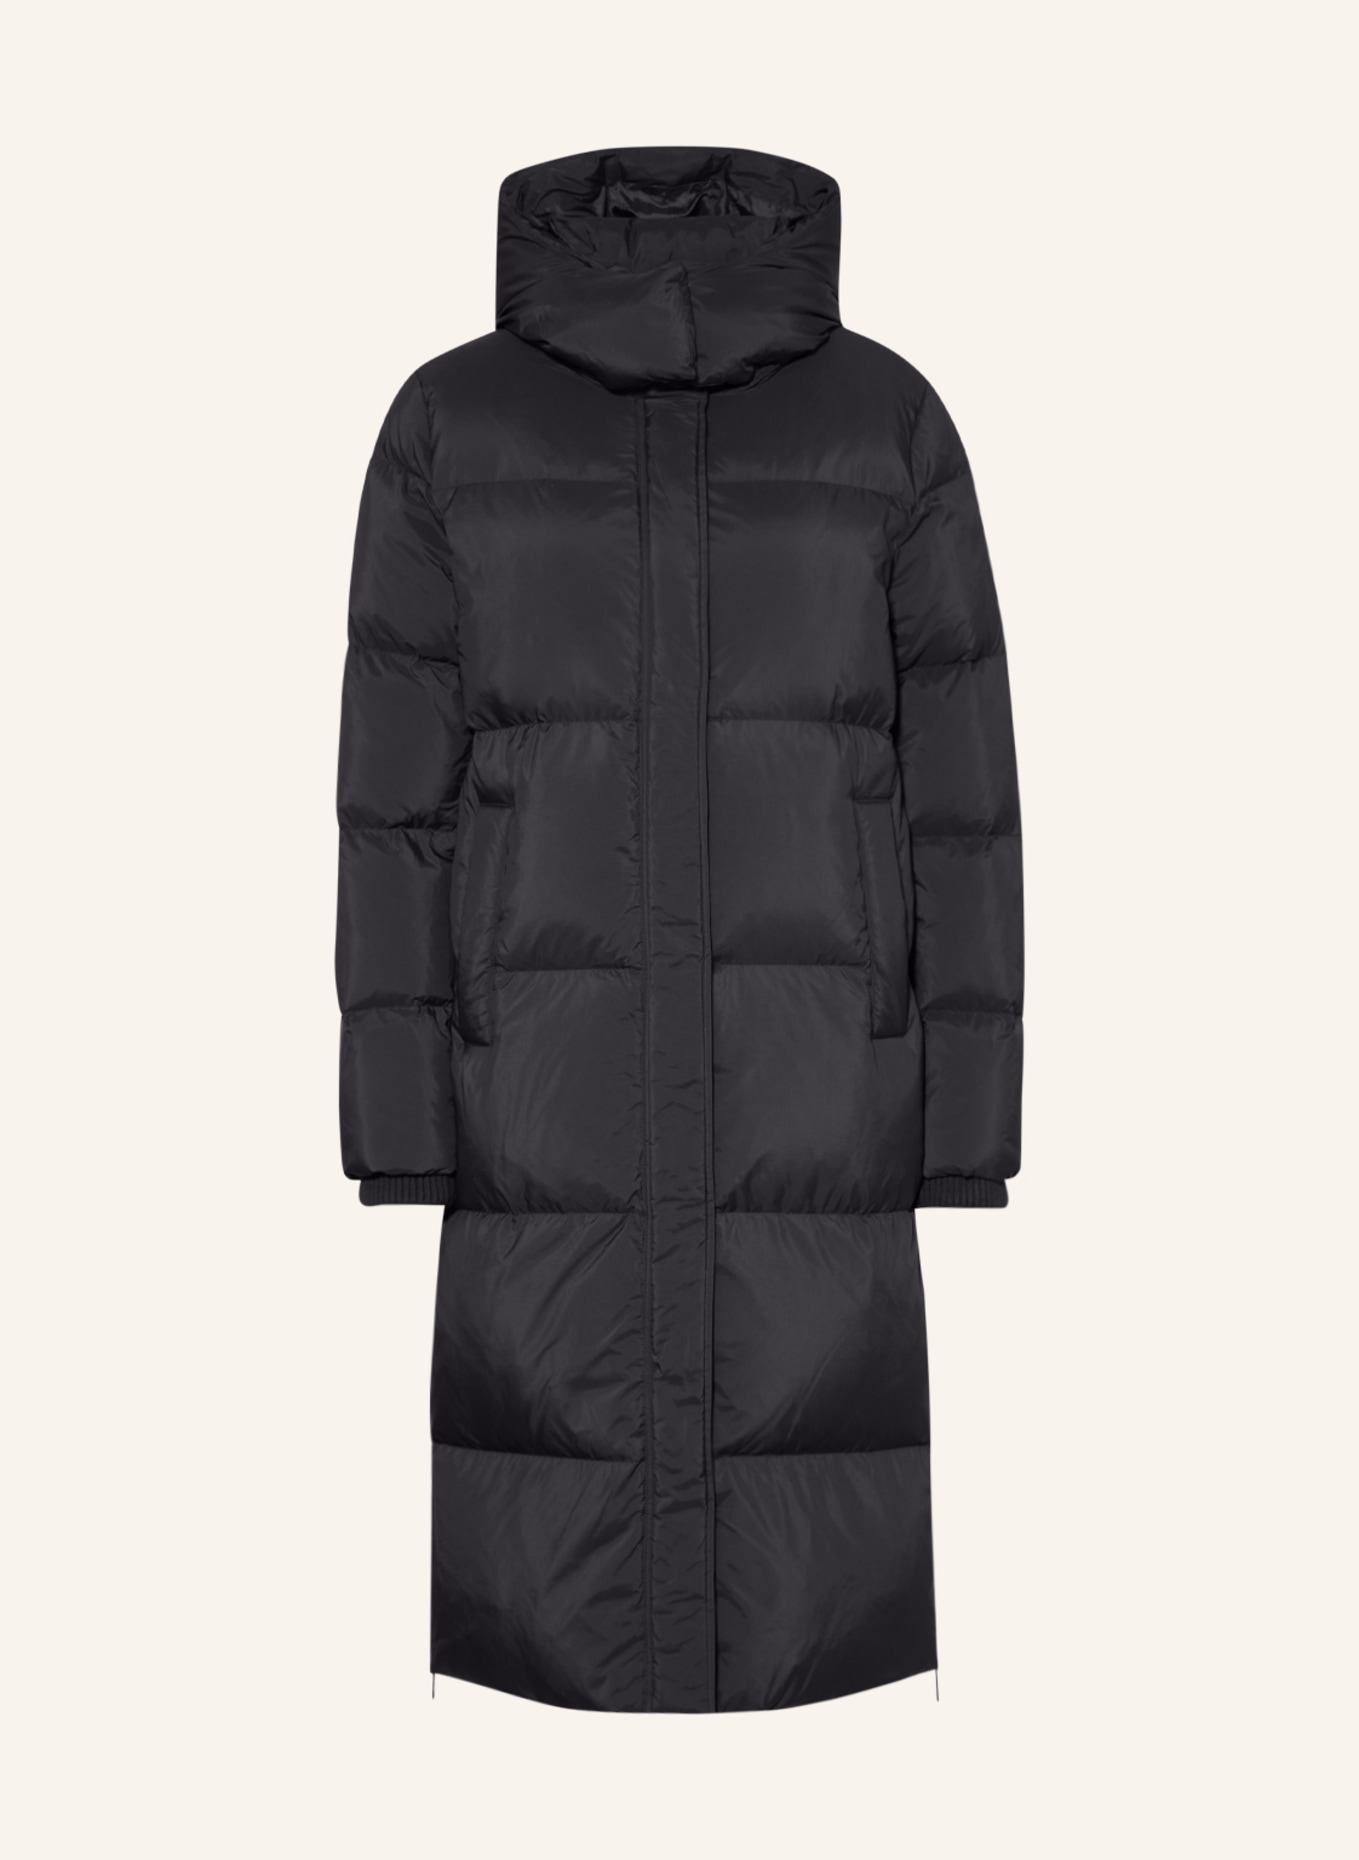 s.Oliver BLACK LABEL Down jacket with removable hood, Color: BLACK (Image 1)